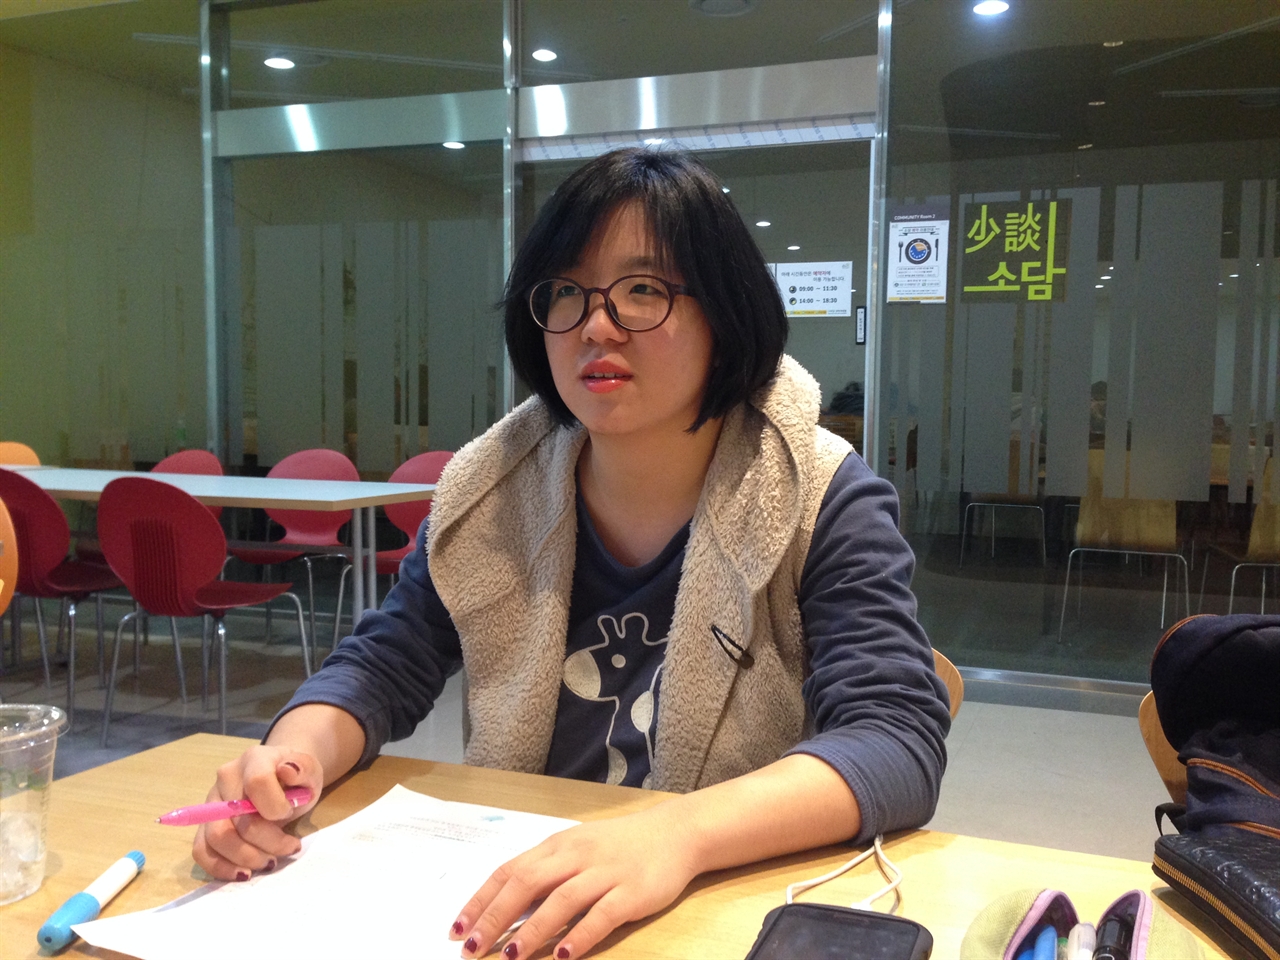 "가만히 있으라" 제안자 용혜인 씨가 경희대학교 청운관 카페에서 인터뷰를 하고 있다.